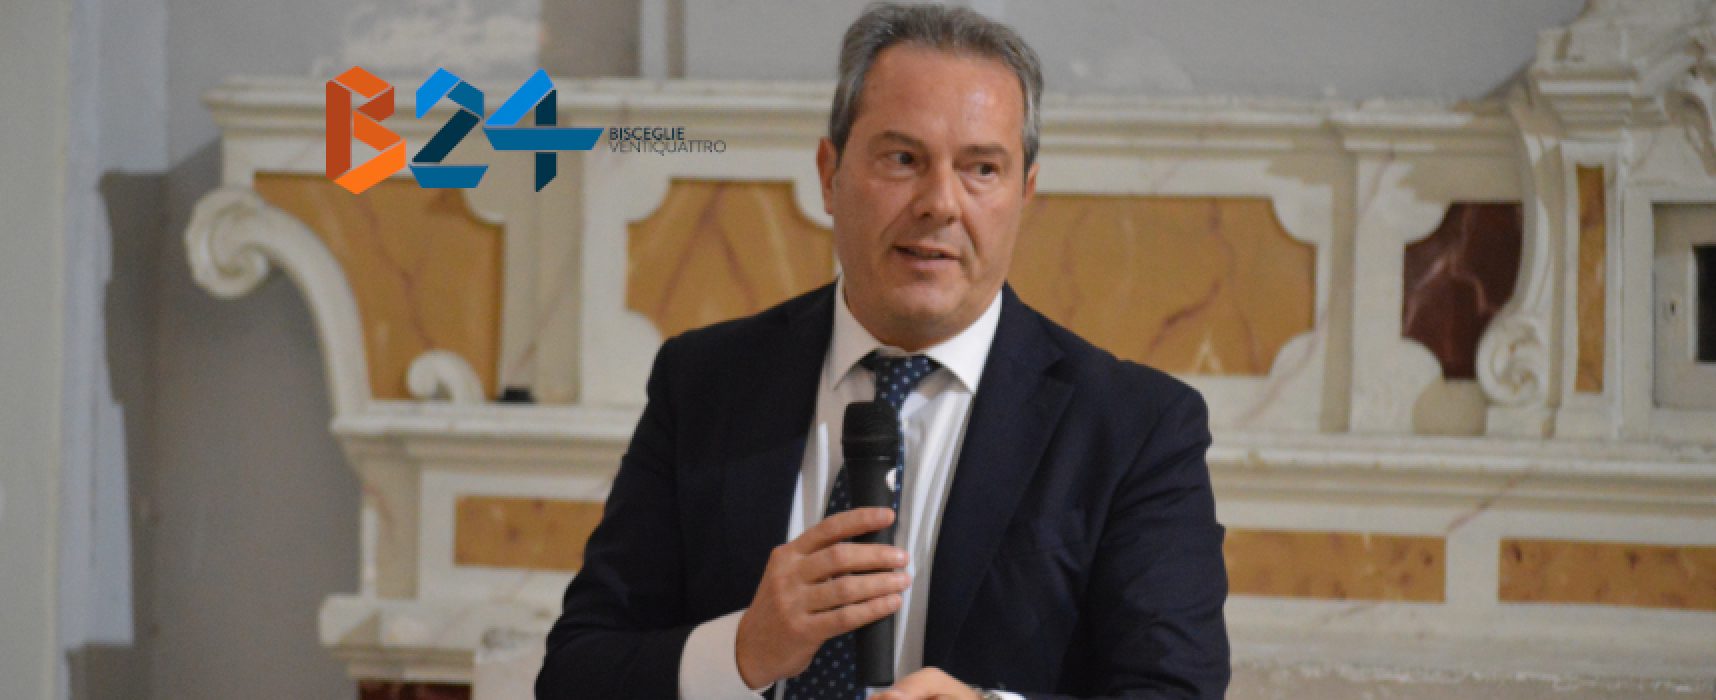 Decreto ingiuntivo dopo ricorso Spina, l’ex sindaco: “Amministrazione condannata a pagare”